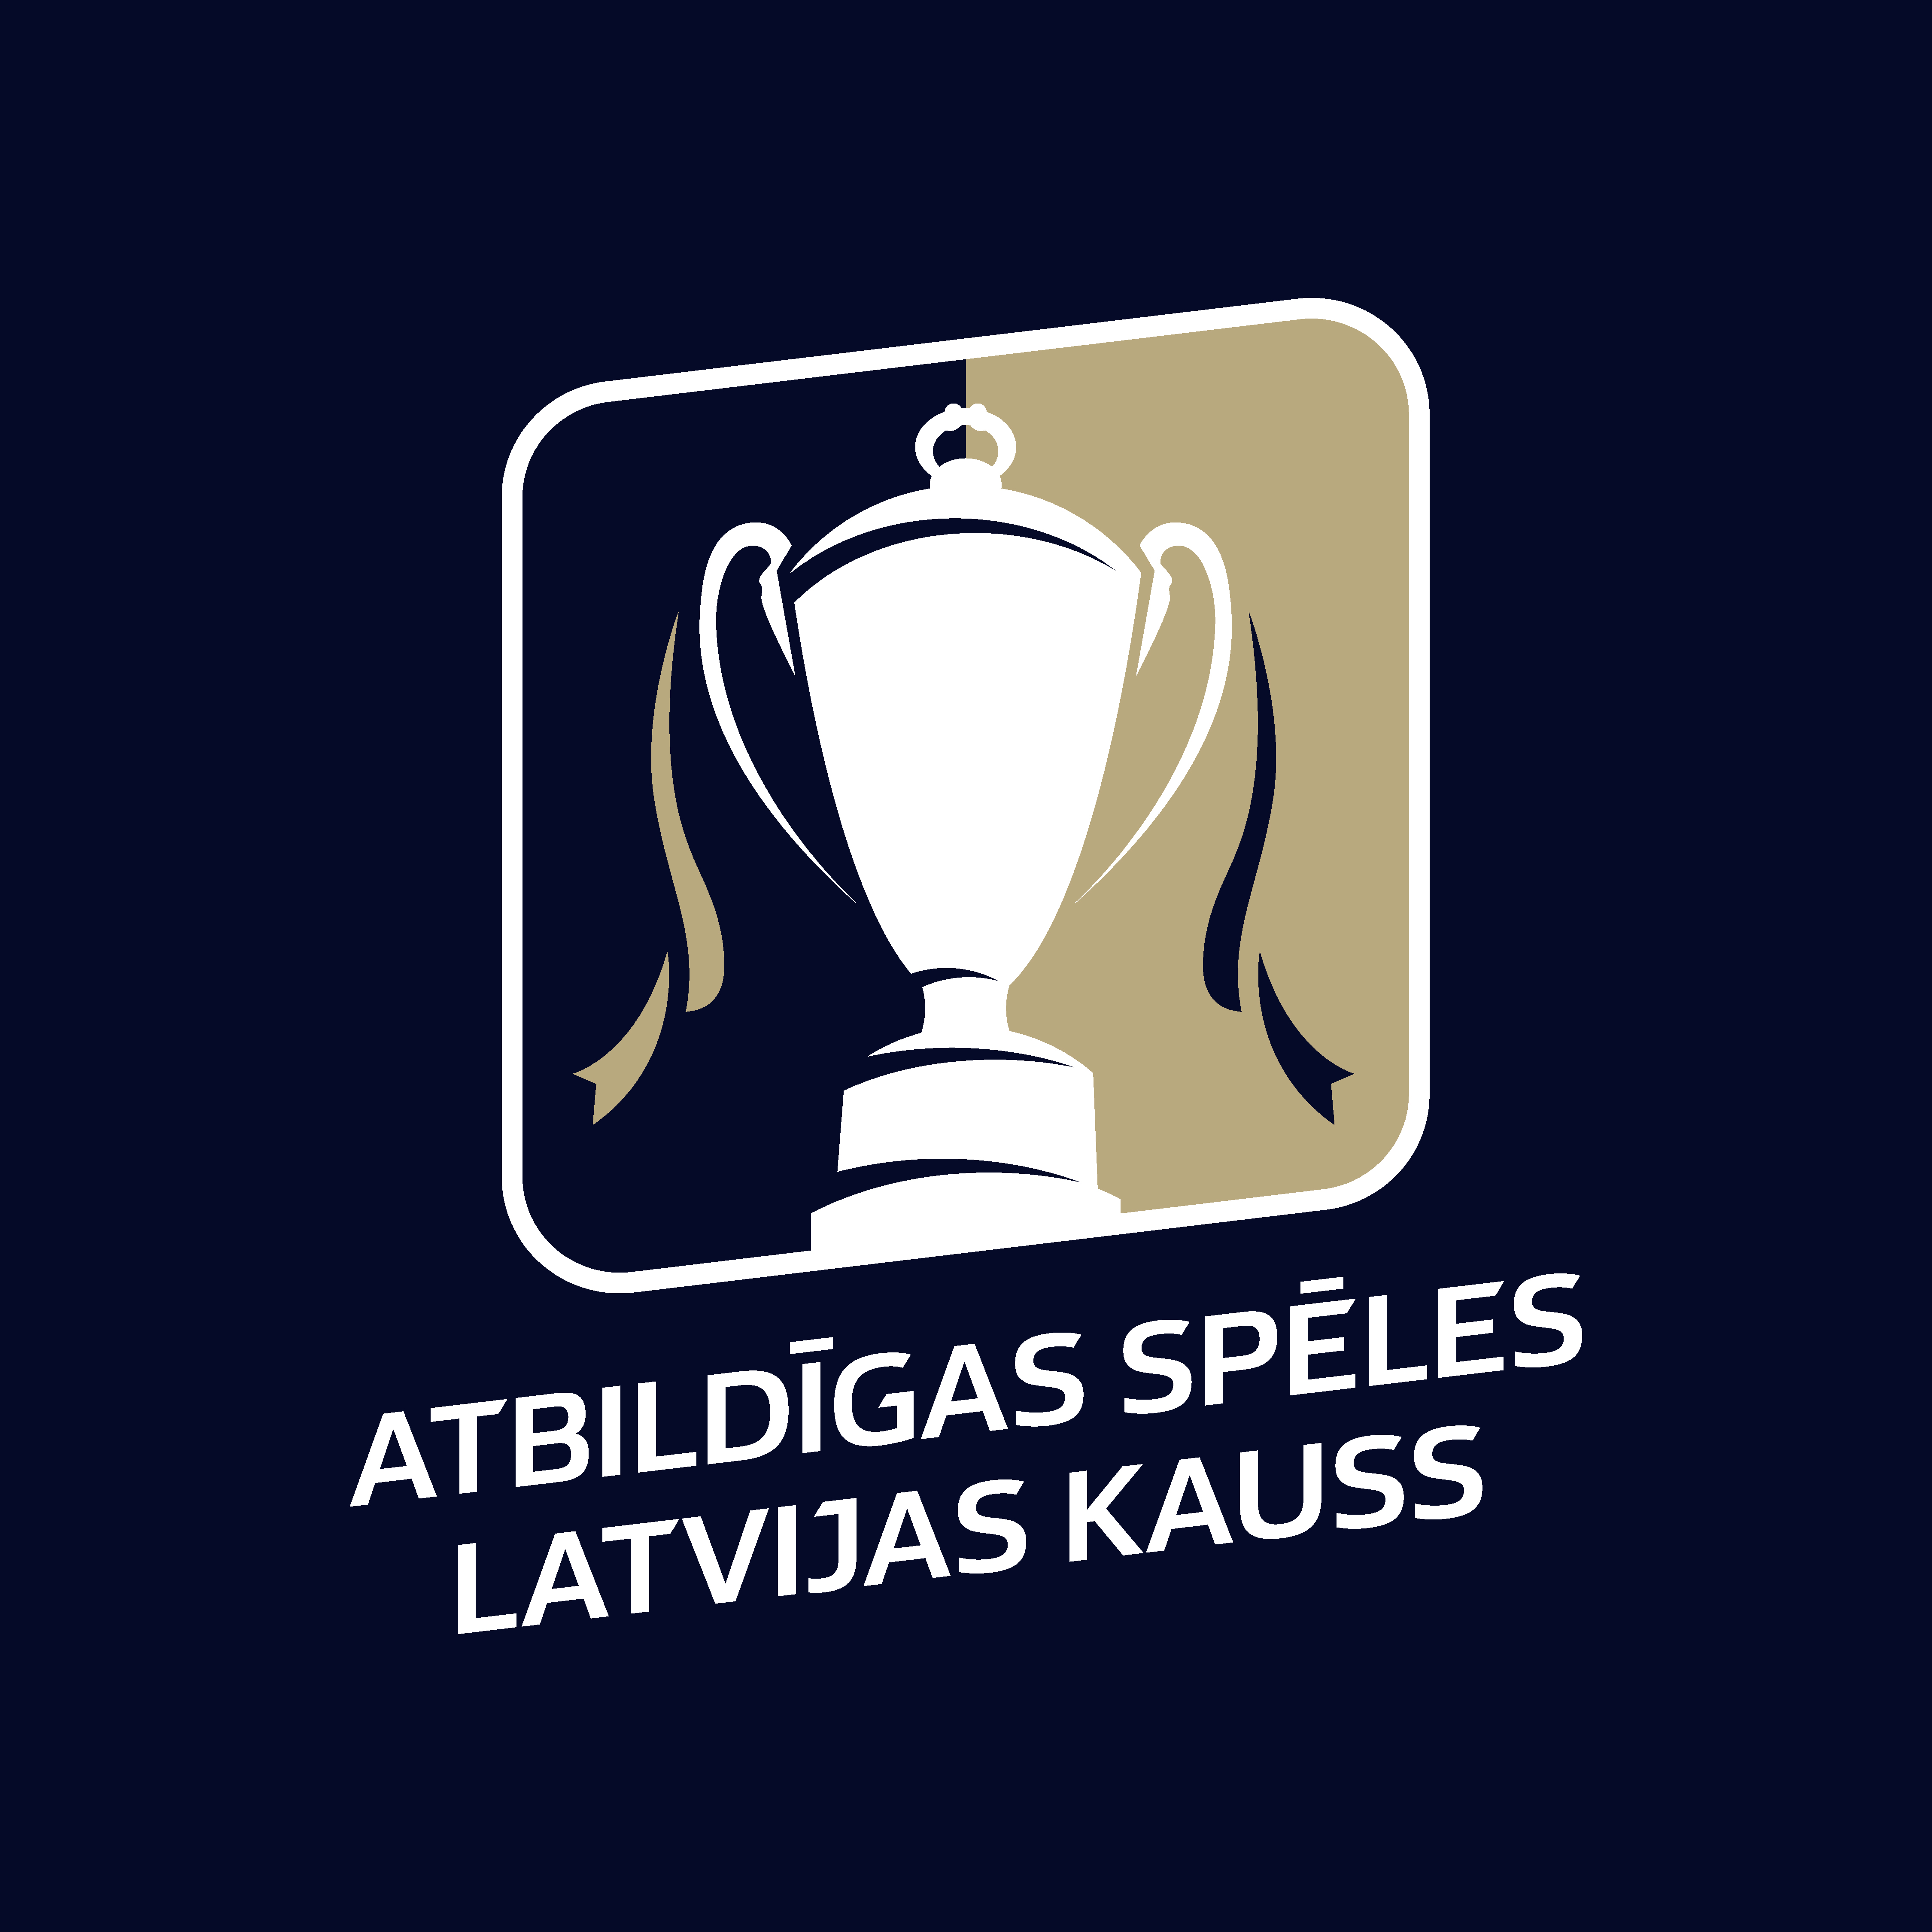 Atbildīgas spēles Latvijas kauss (atjaunotais logo)